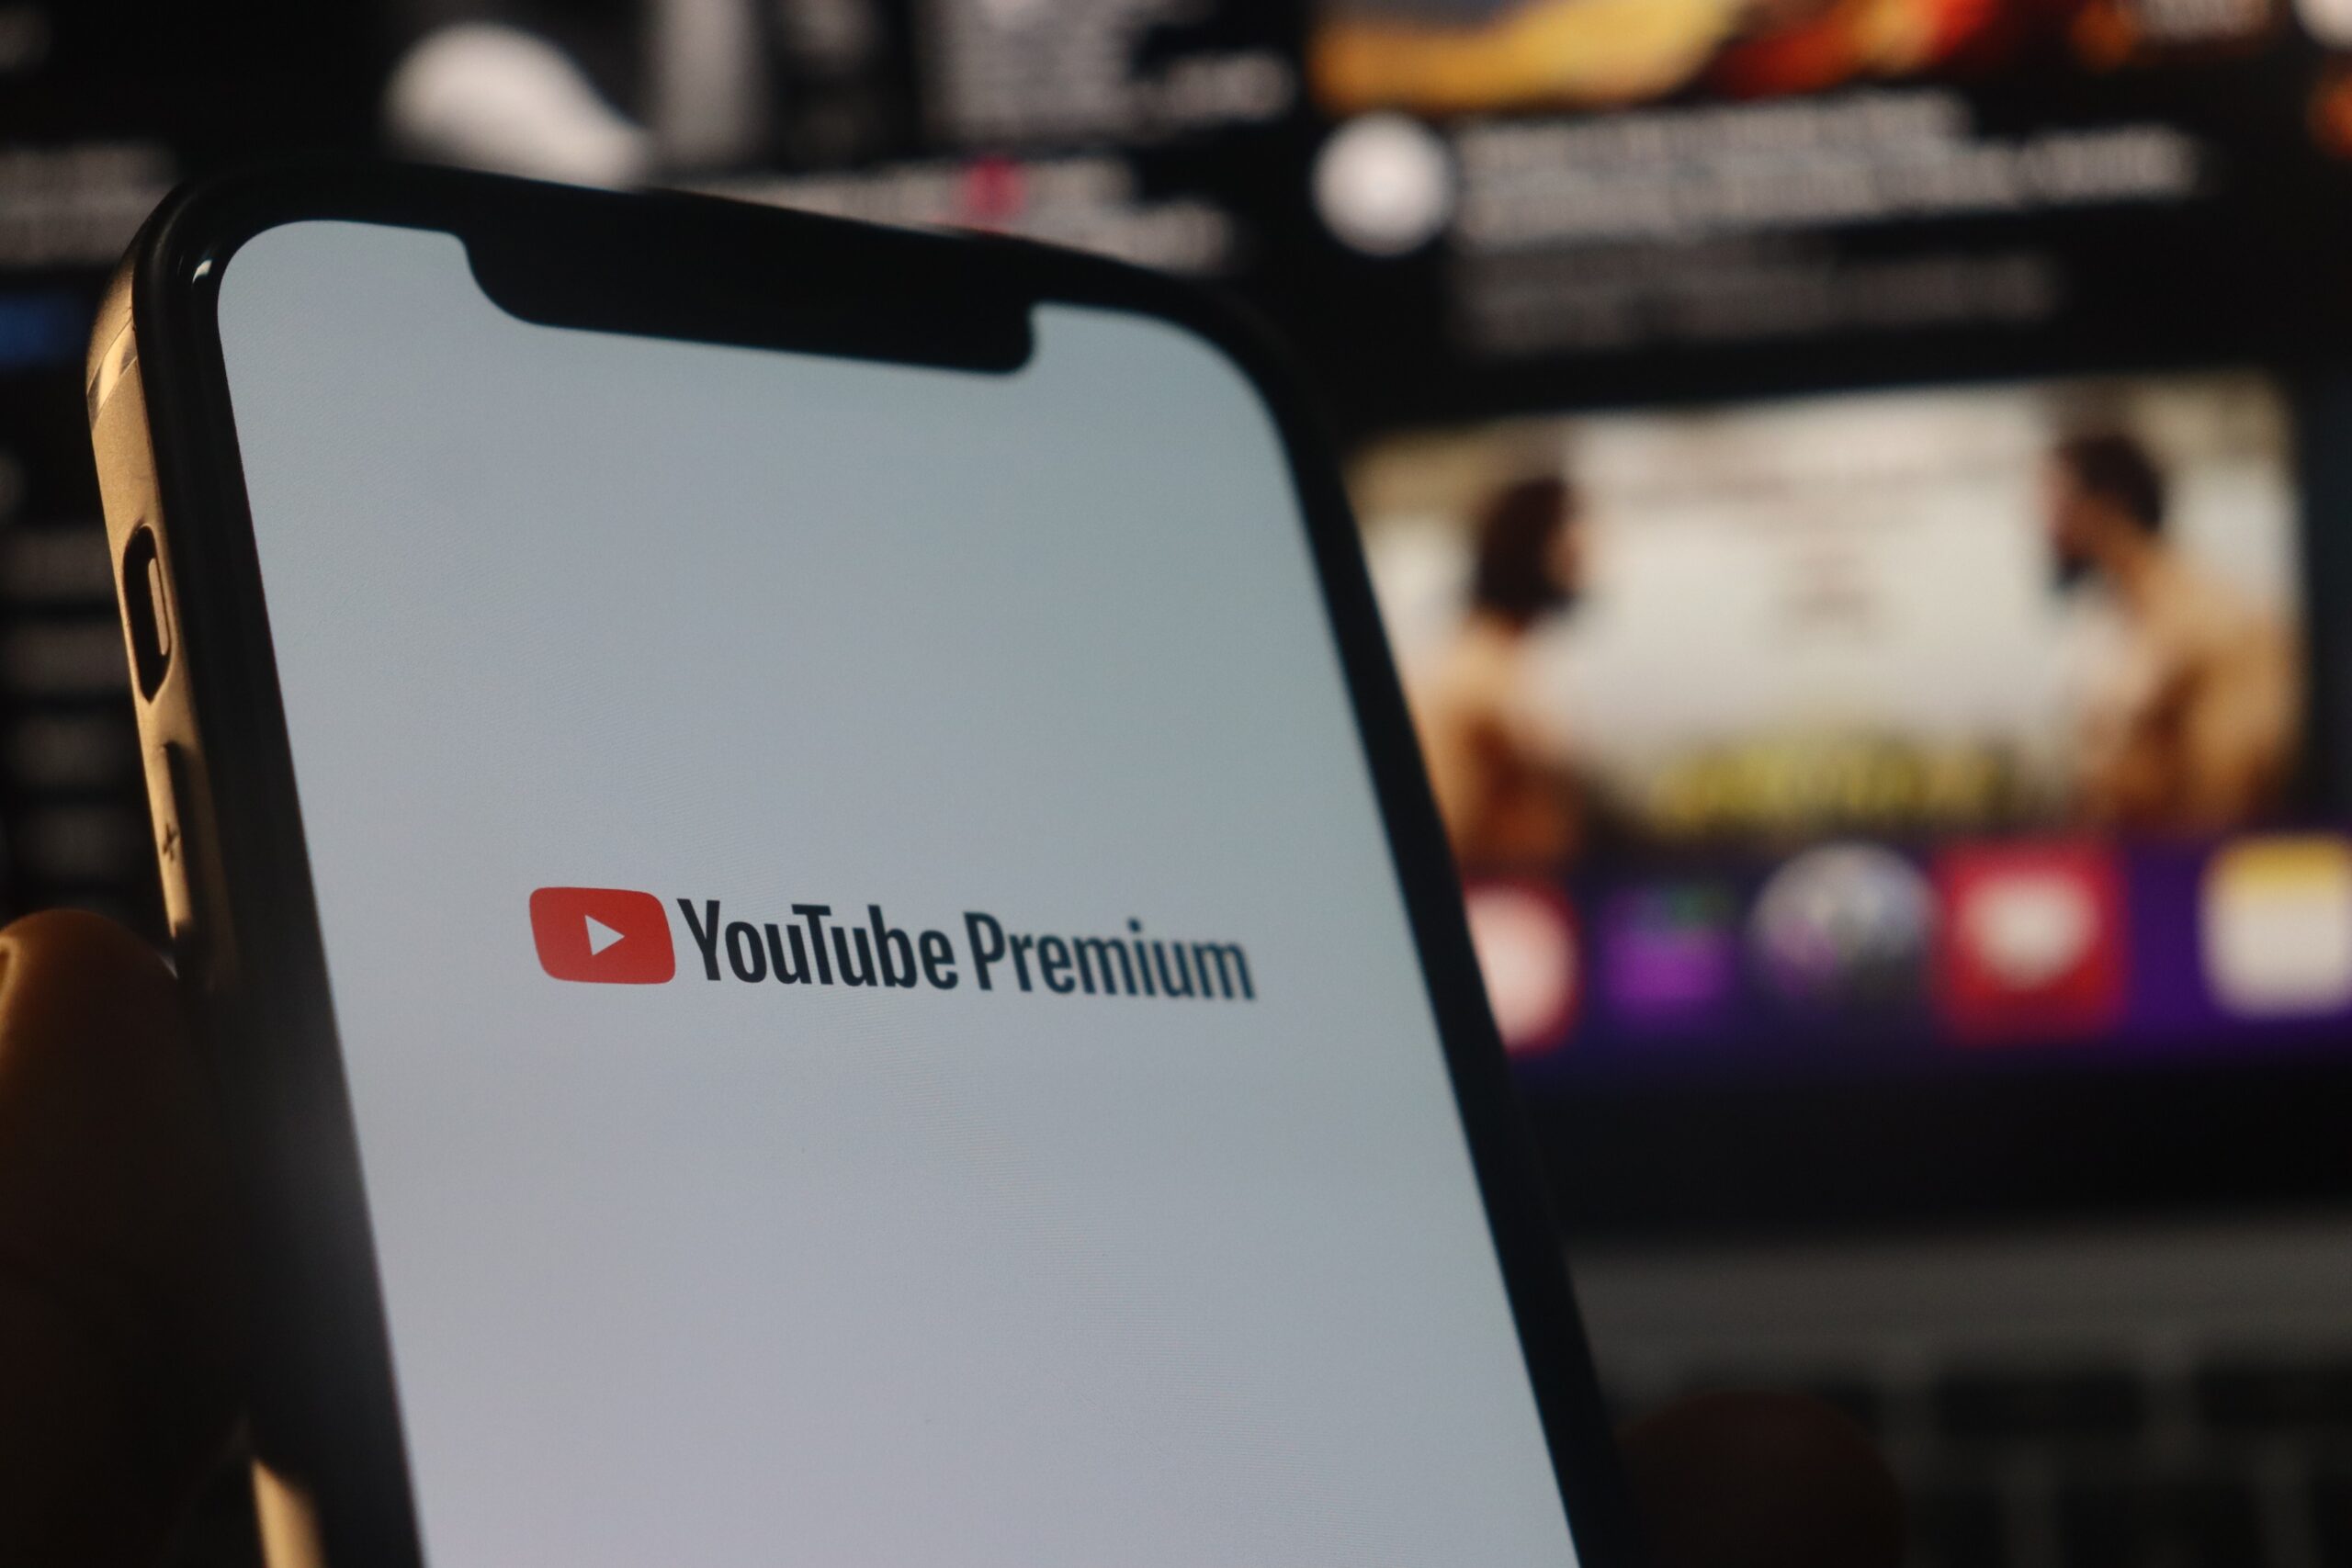 Ekran telefonu z logo YouTube Premium na pierwszym planie, rozmyte tło z odtwarzanym wideo.